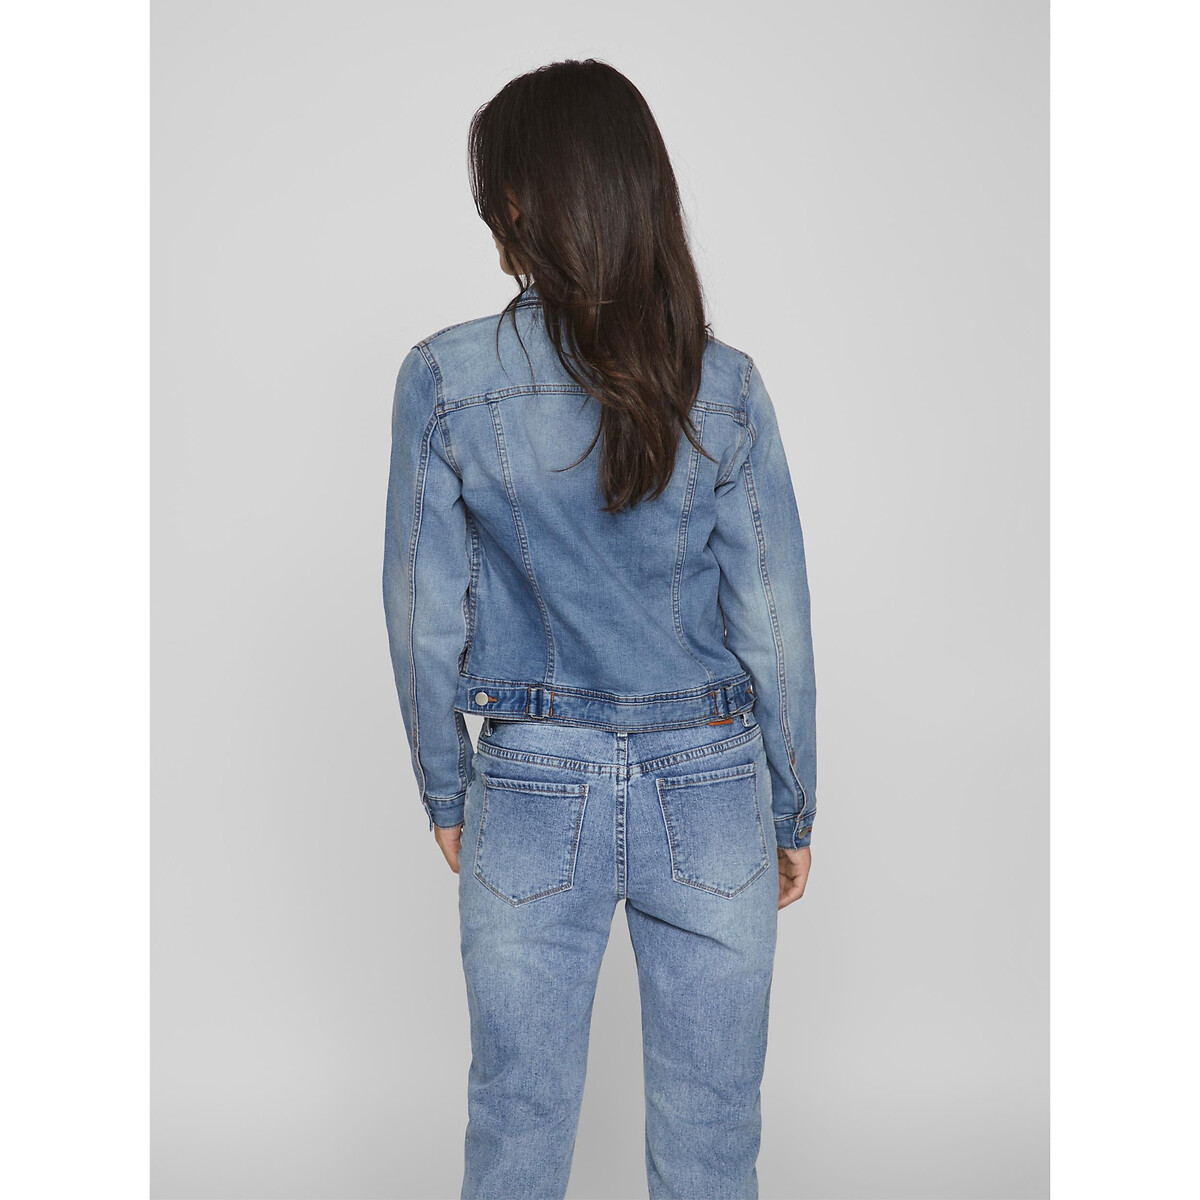 Куртка Короткая прямого покроя из джинсовой ткани XL синий LaRedoute, размер XL - фото 5